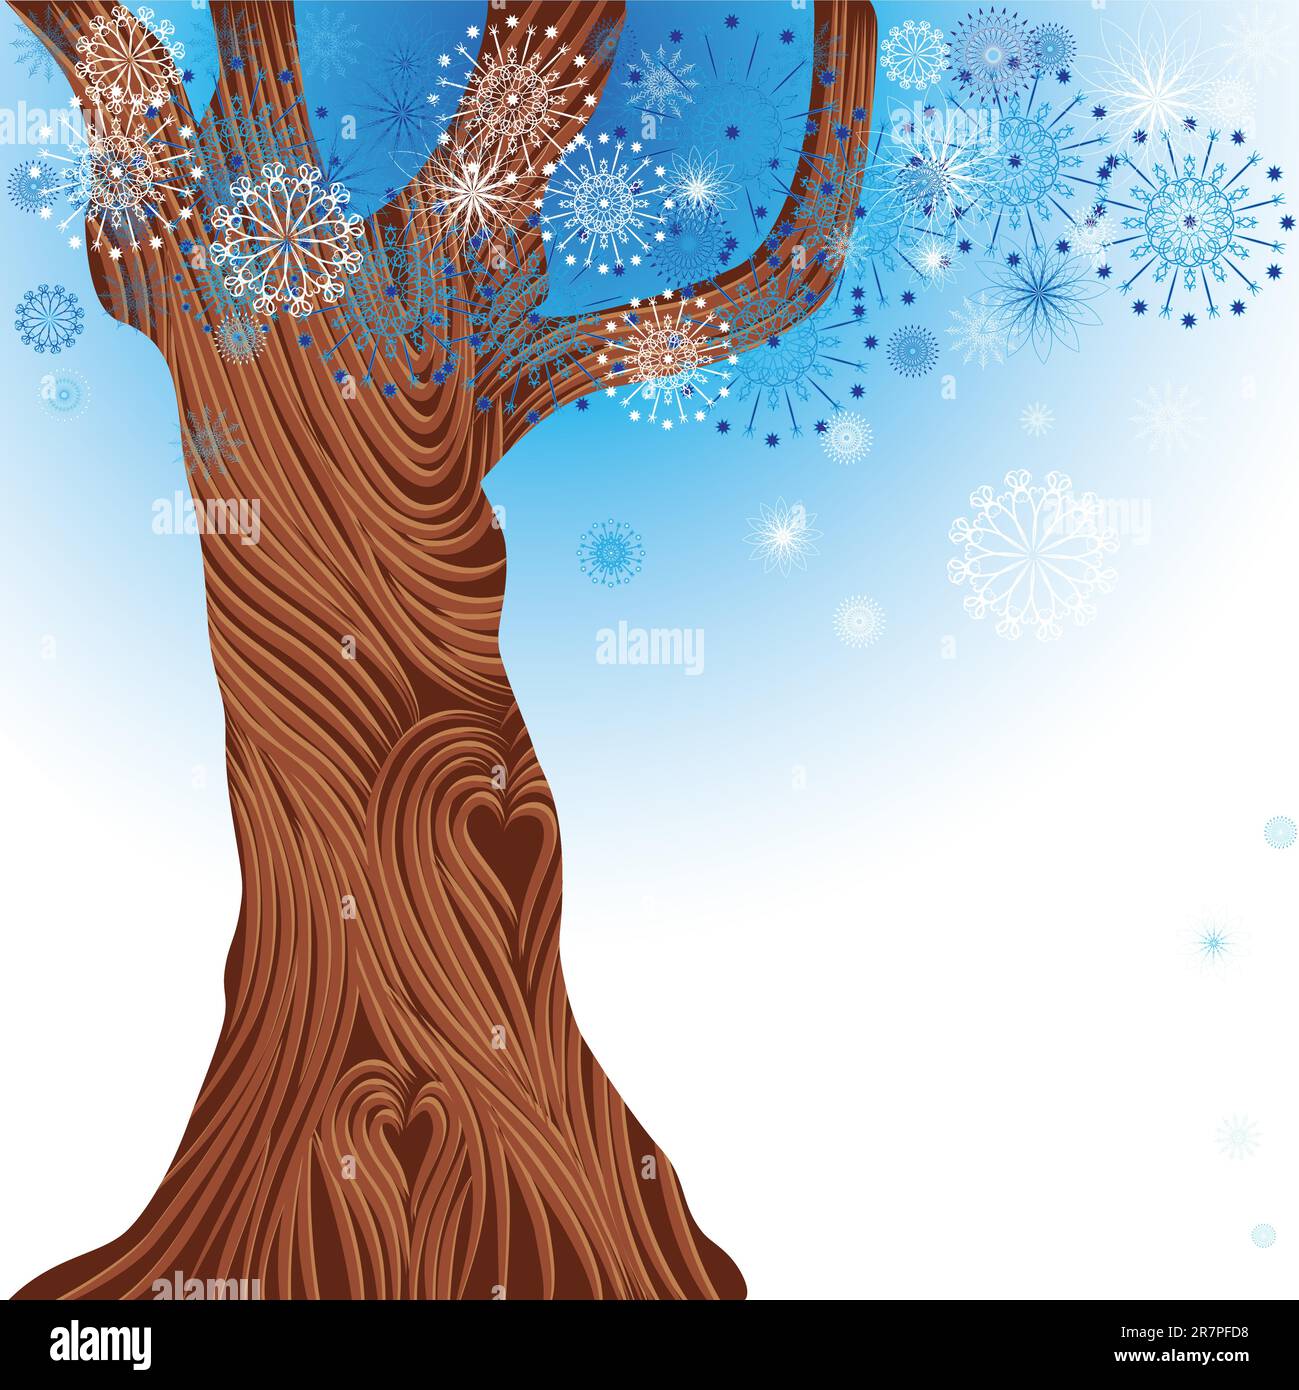 Dekorativer Winterbaum-Vektor, Schneeflocke-Hintergrund. Weihnachtsillustrierung. Stock Vektor